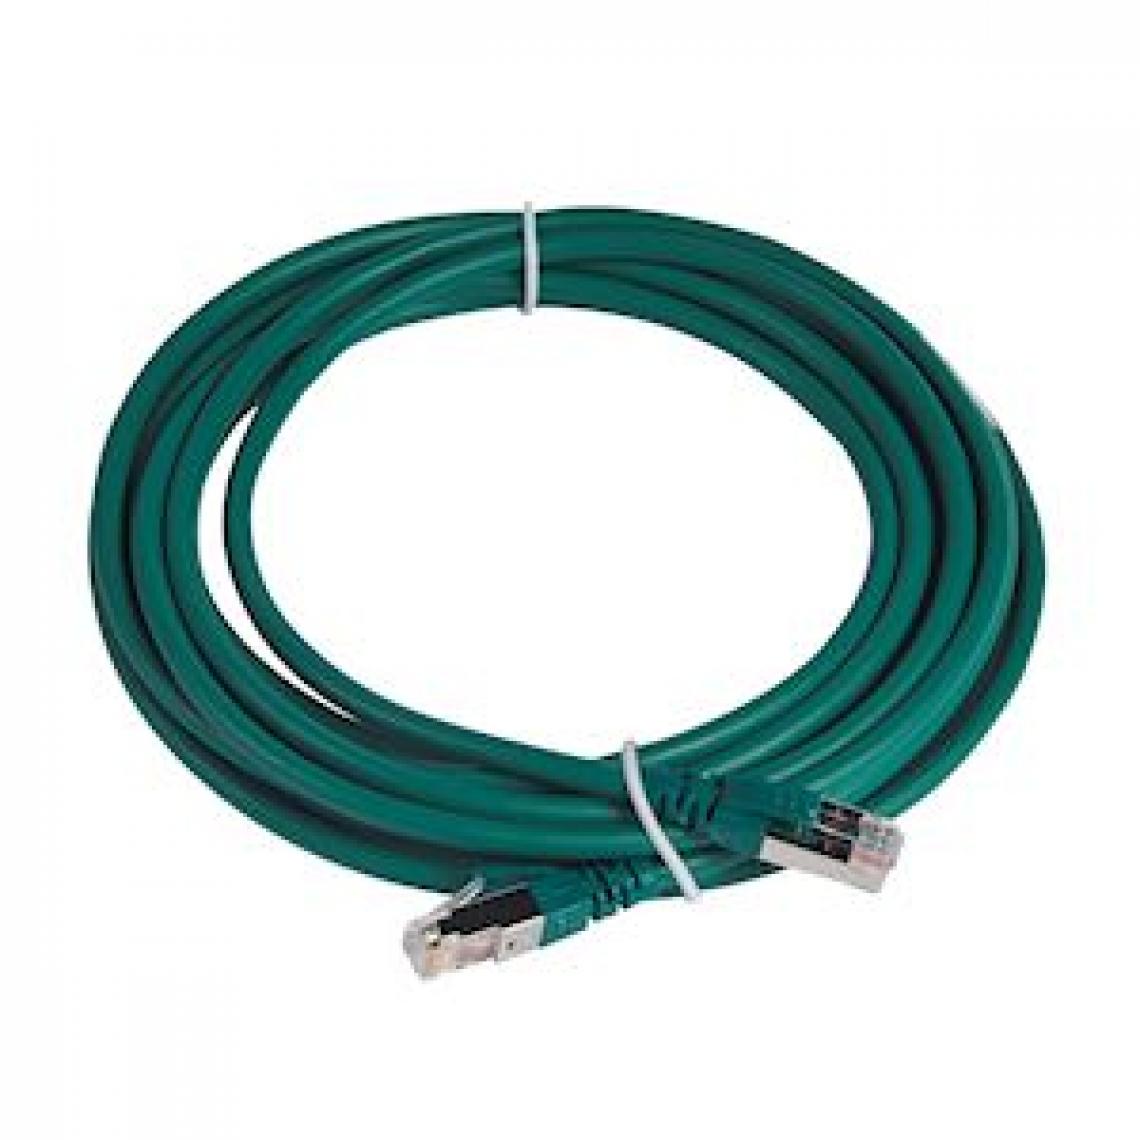 Legrand - cordon de brassage rj45 - c6a - s/ftp - vert - 5 mètres - legrand 051869 - Fils et câbles électriques